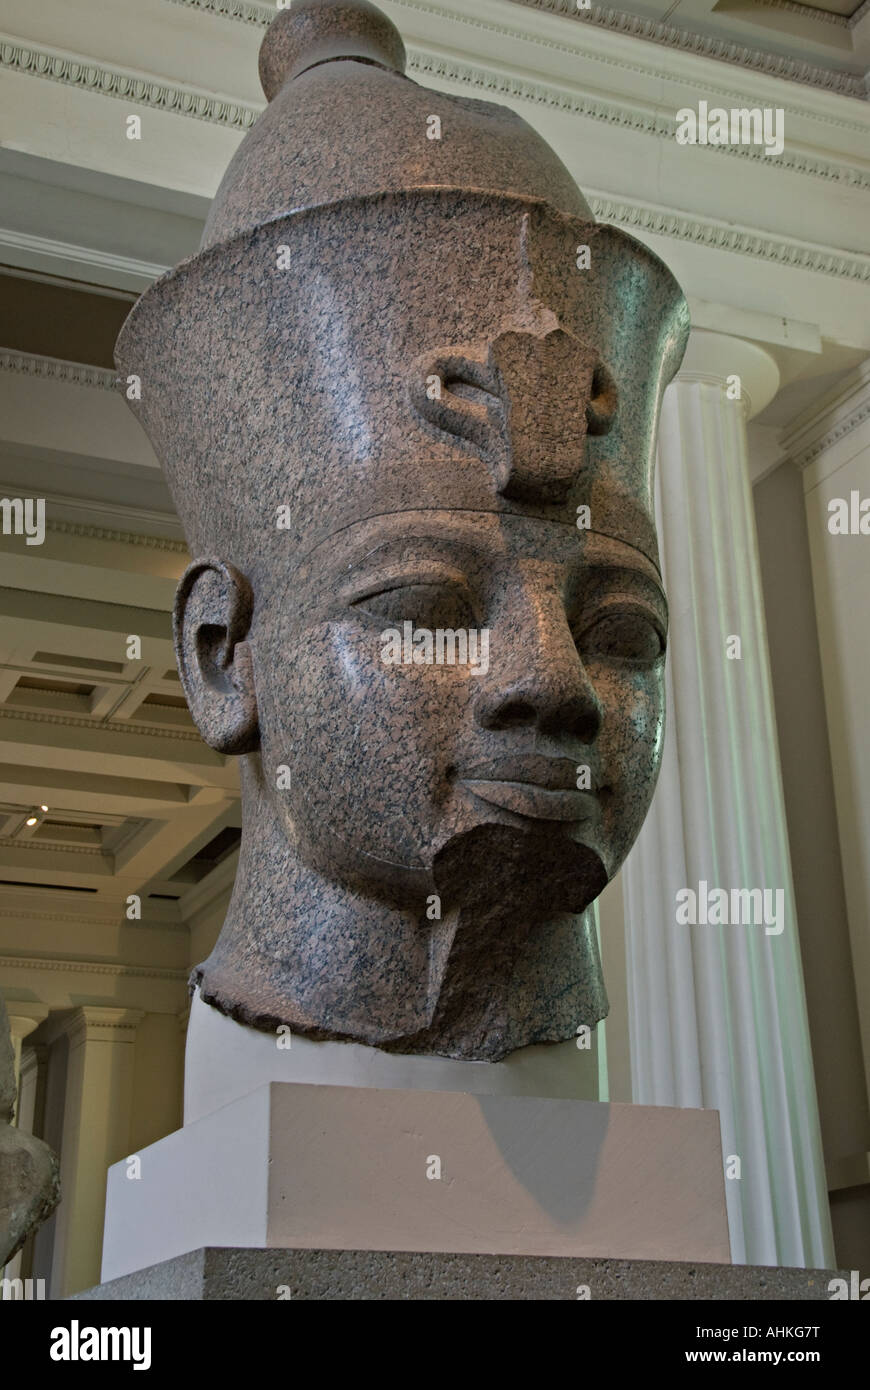 La sculpture égyptienne de granit dans British Museum Banque D'Images